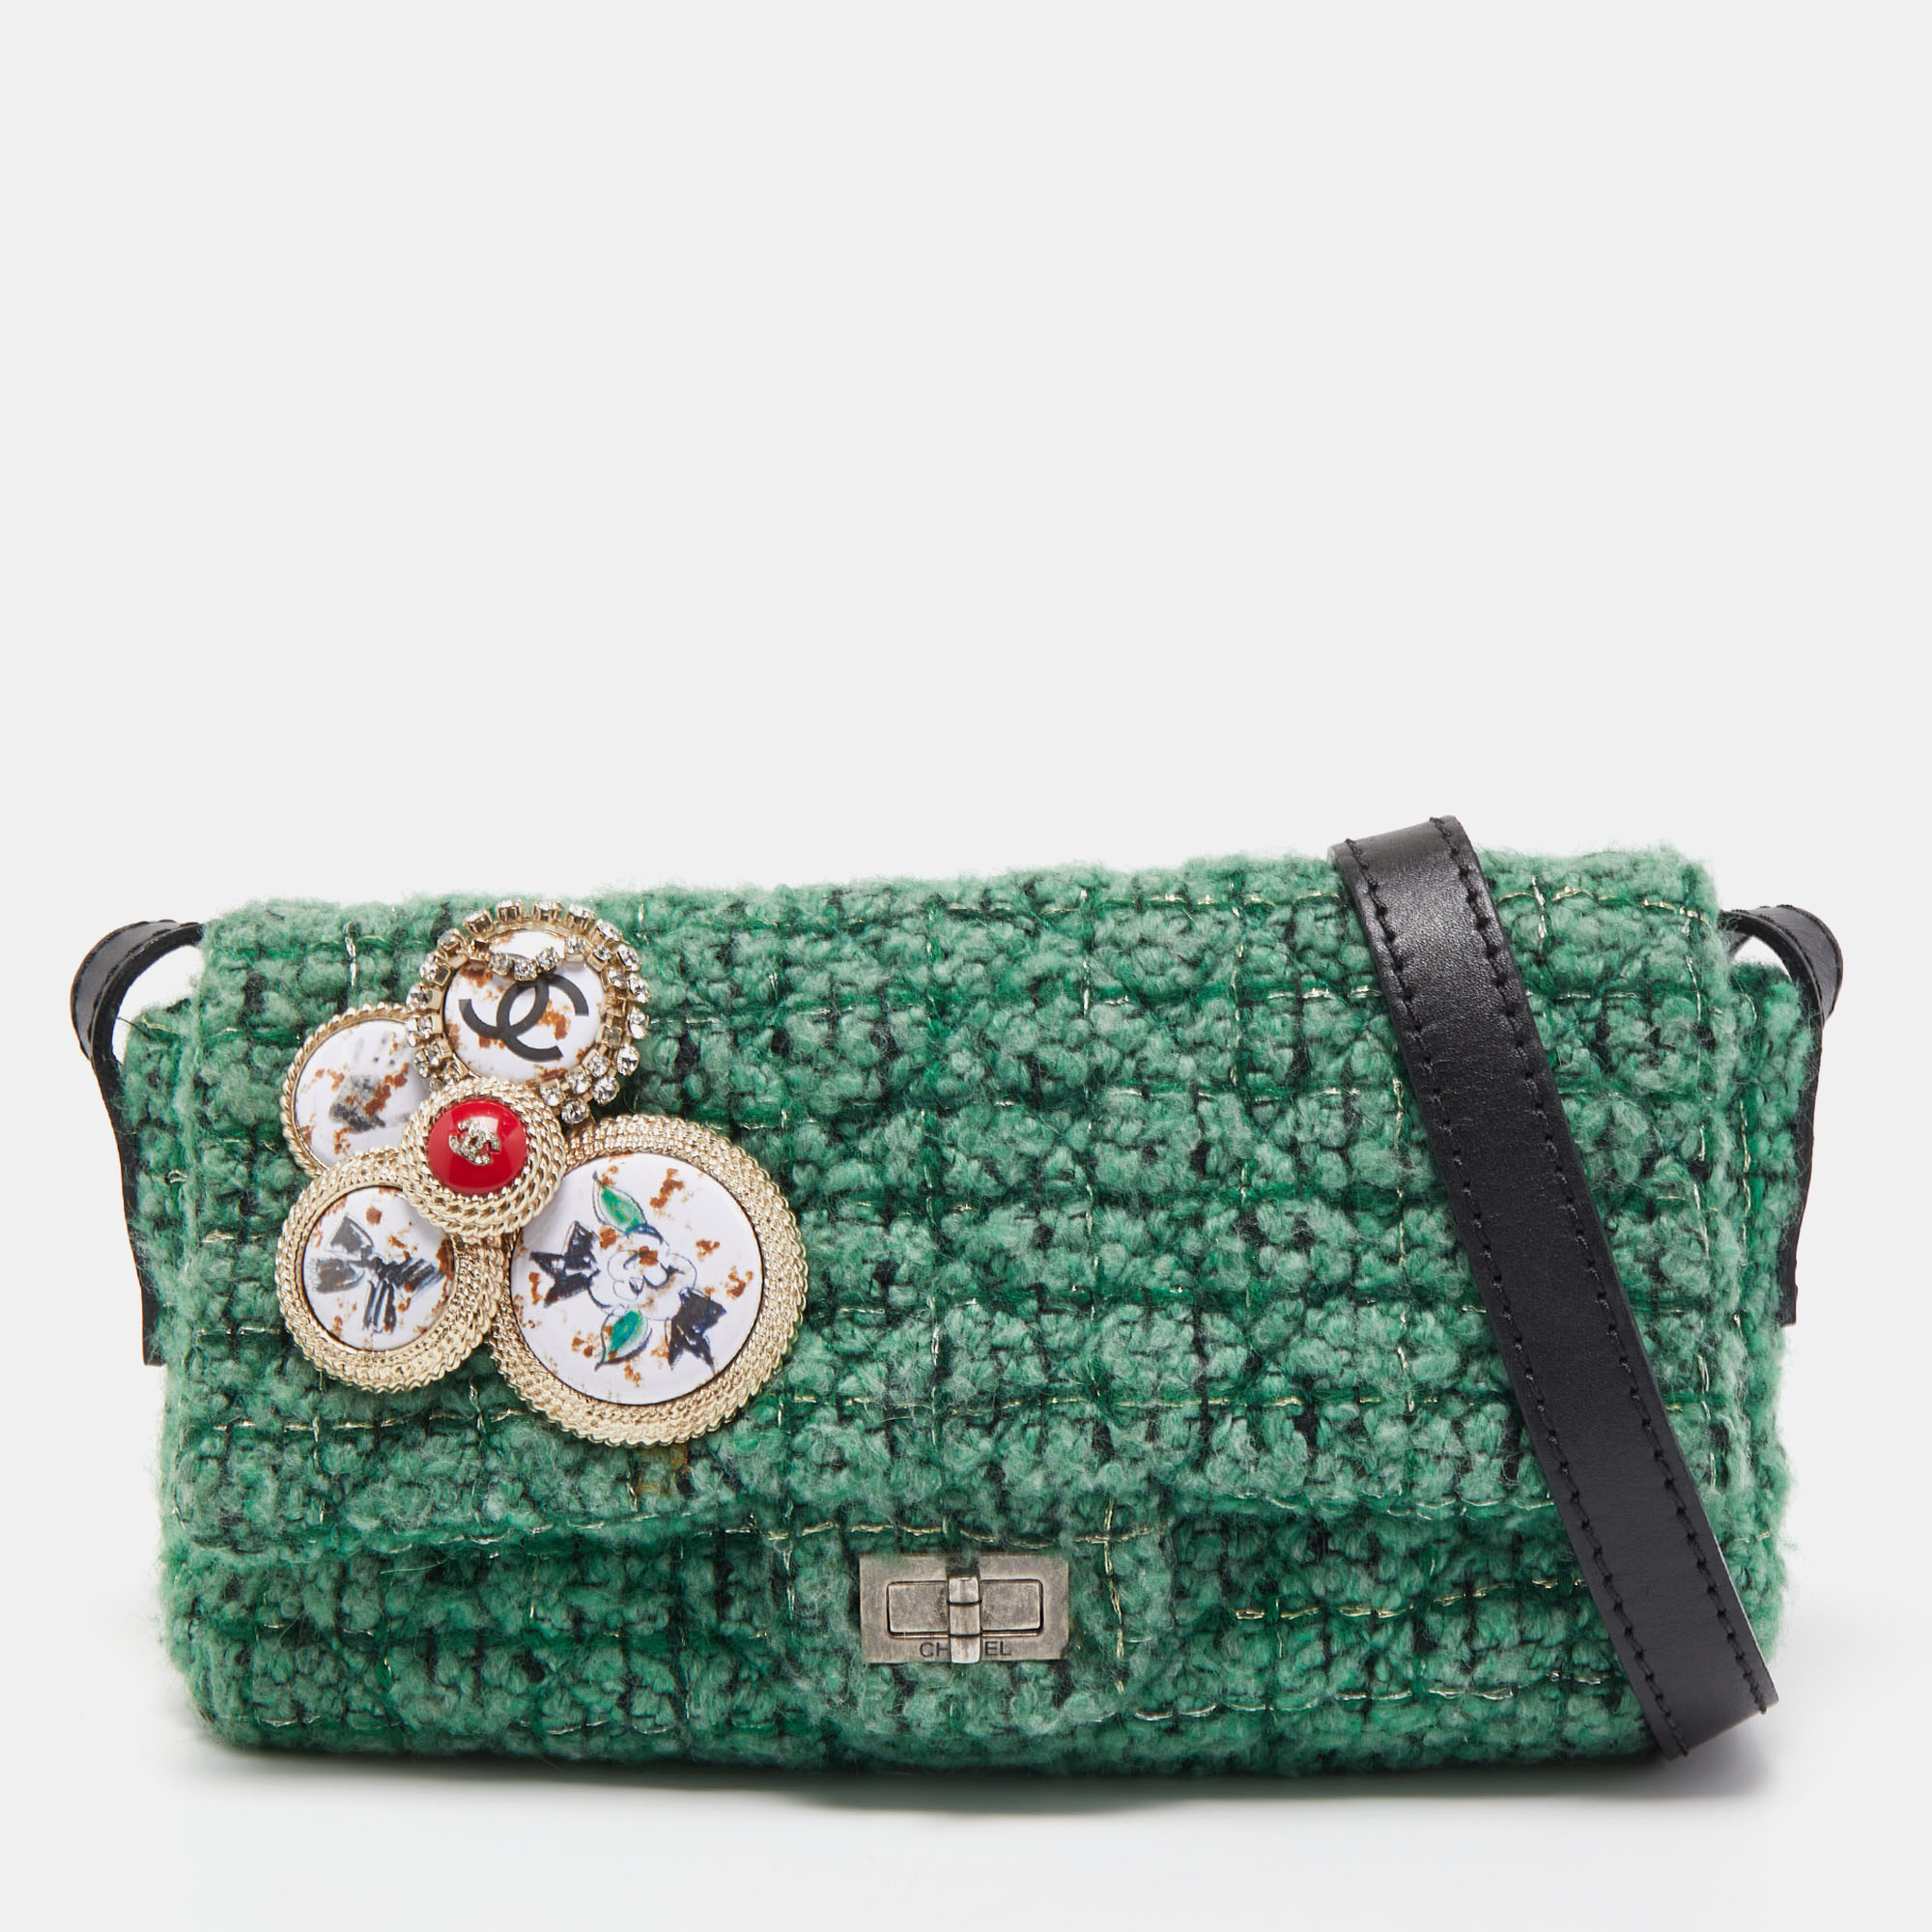 Chanel Green/Black Tweed Reissue Brooch Flap Bag